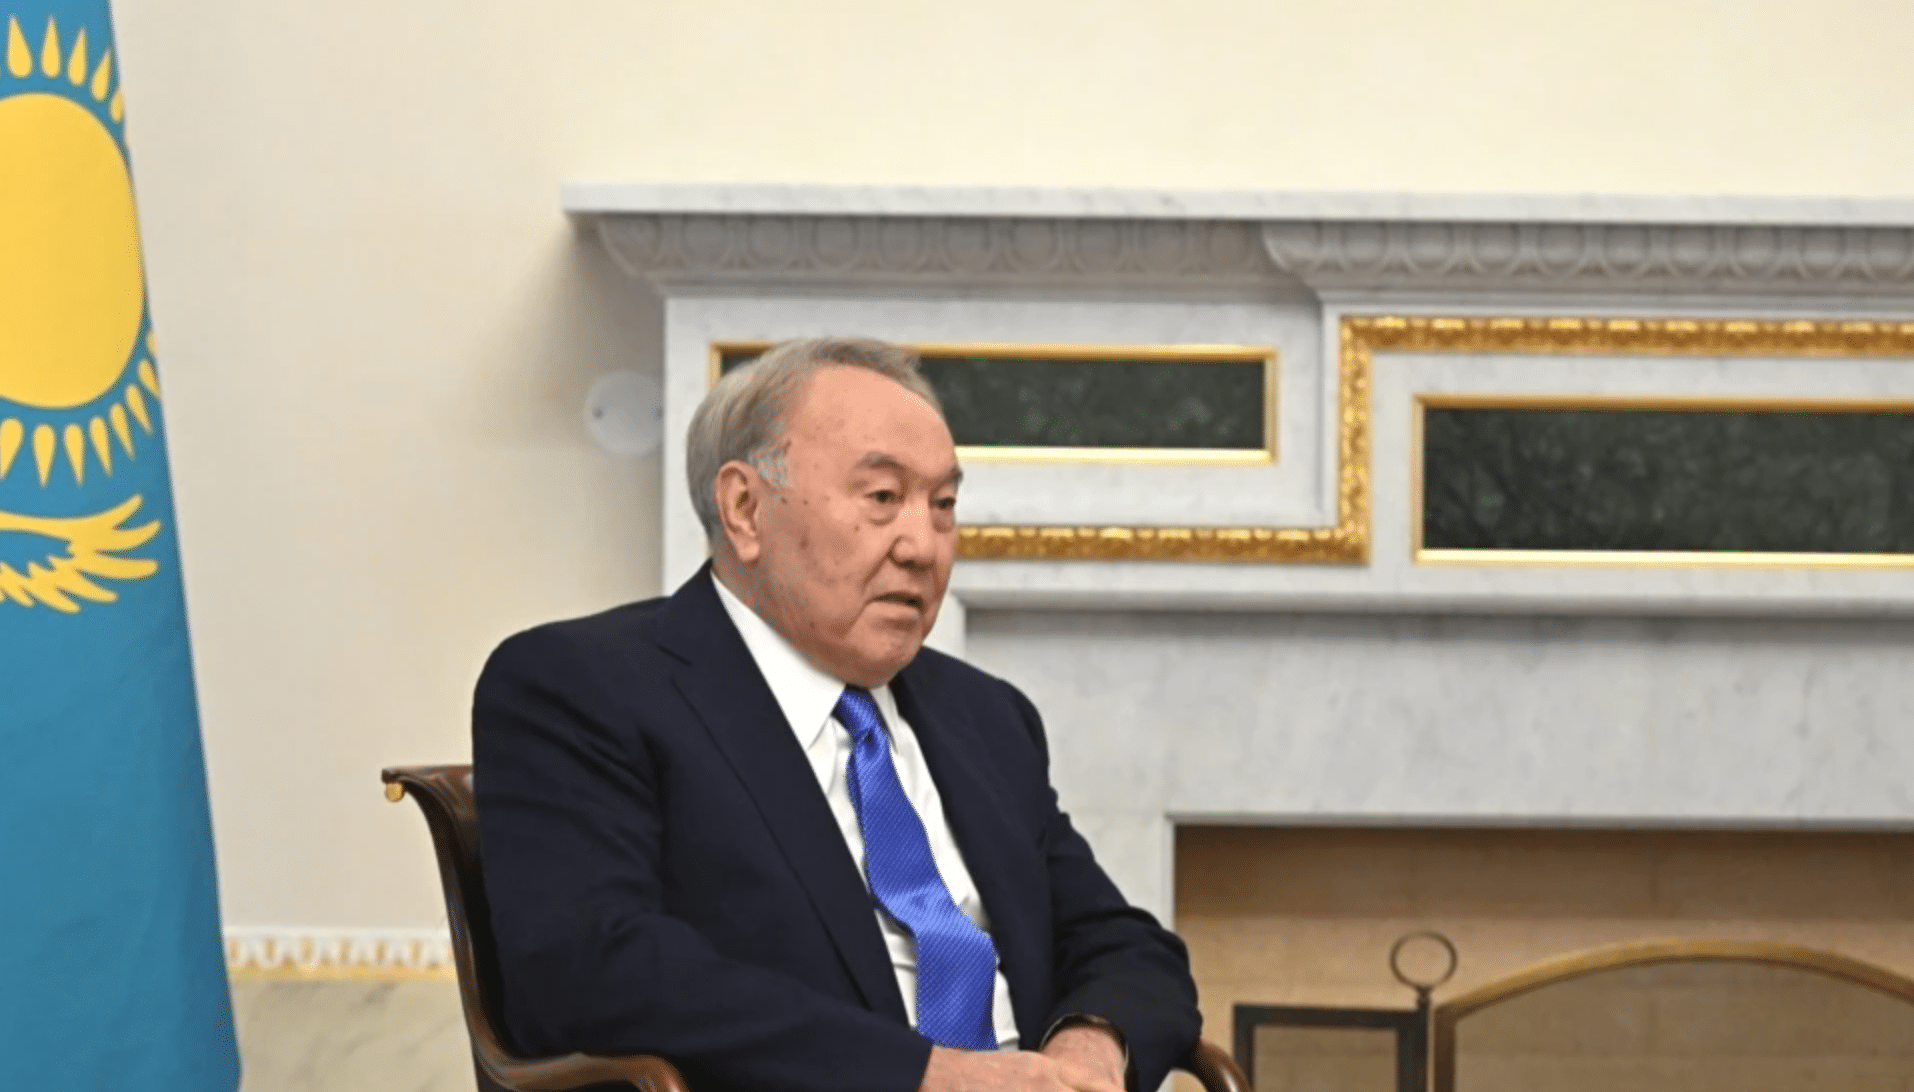 Ղազախստանի նախագահը 24 ժամվա ընթացքում ժողովրդին երկրորդ ուղերձն է հղել